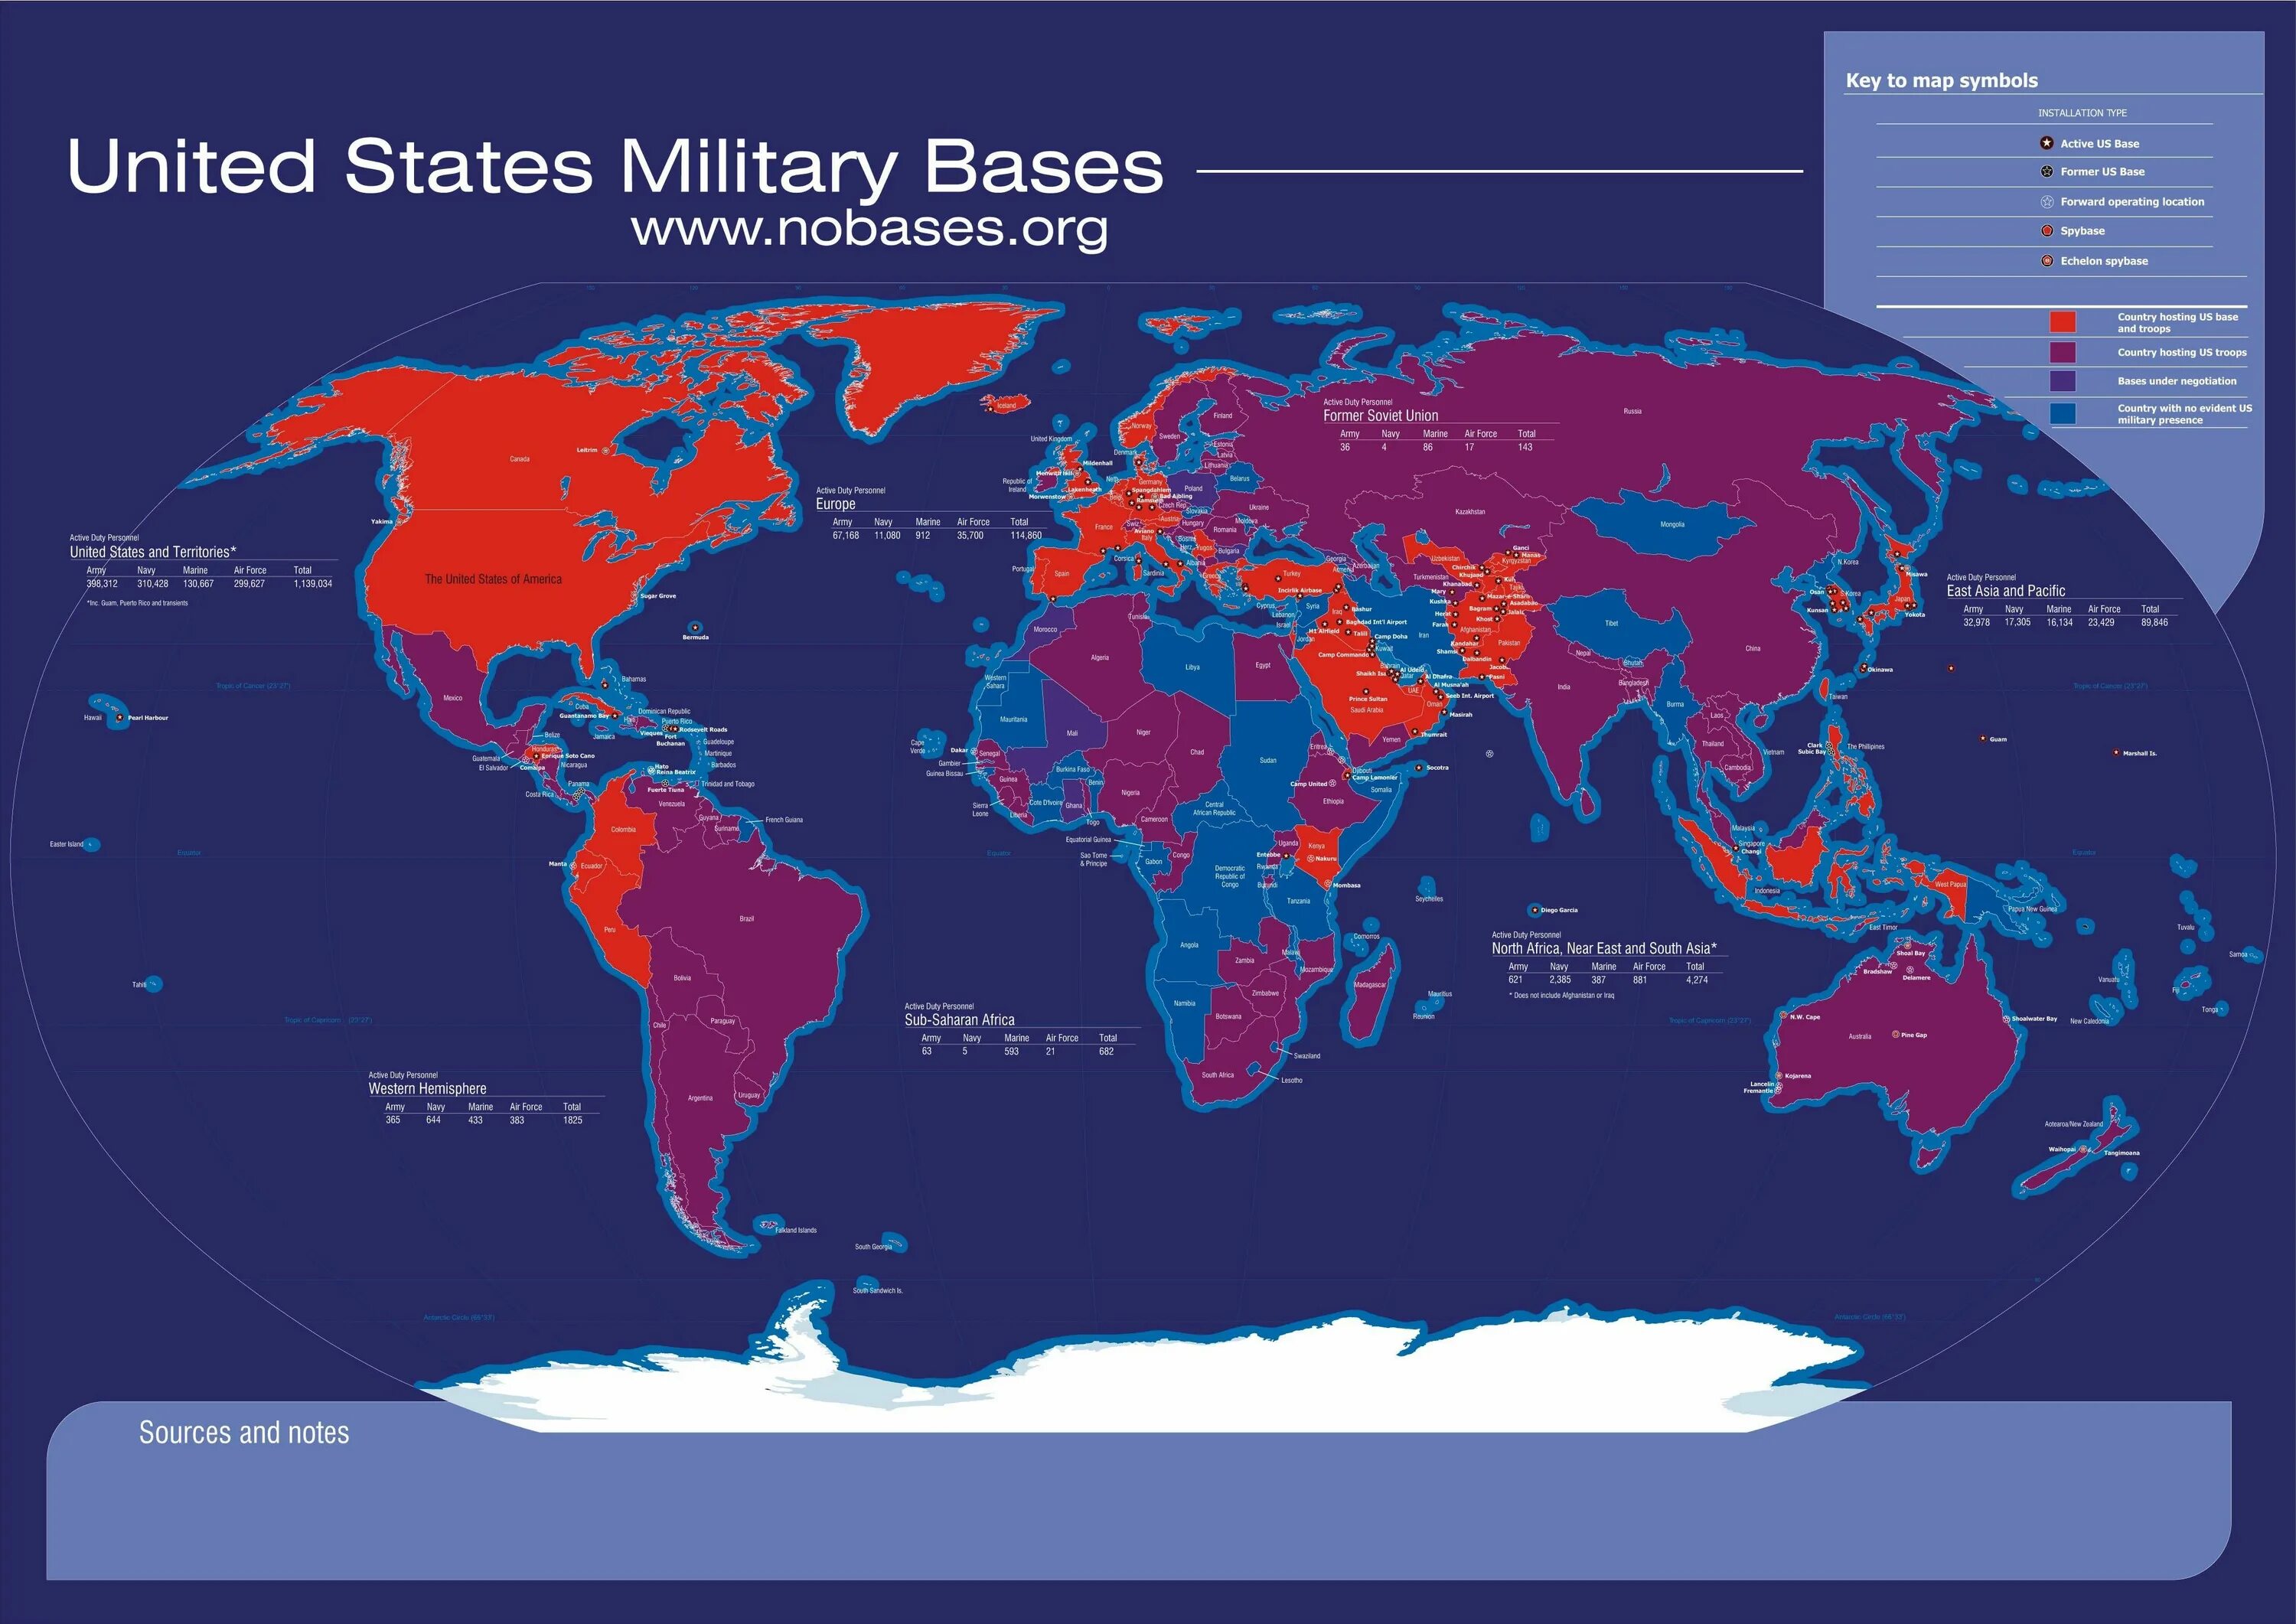 All over the world we. Карта американских военных баз в мире.